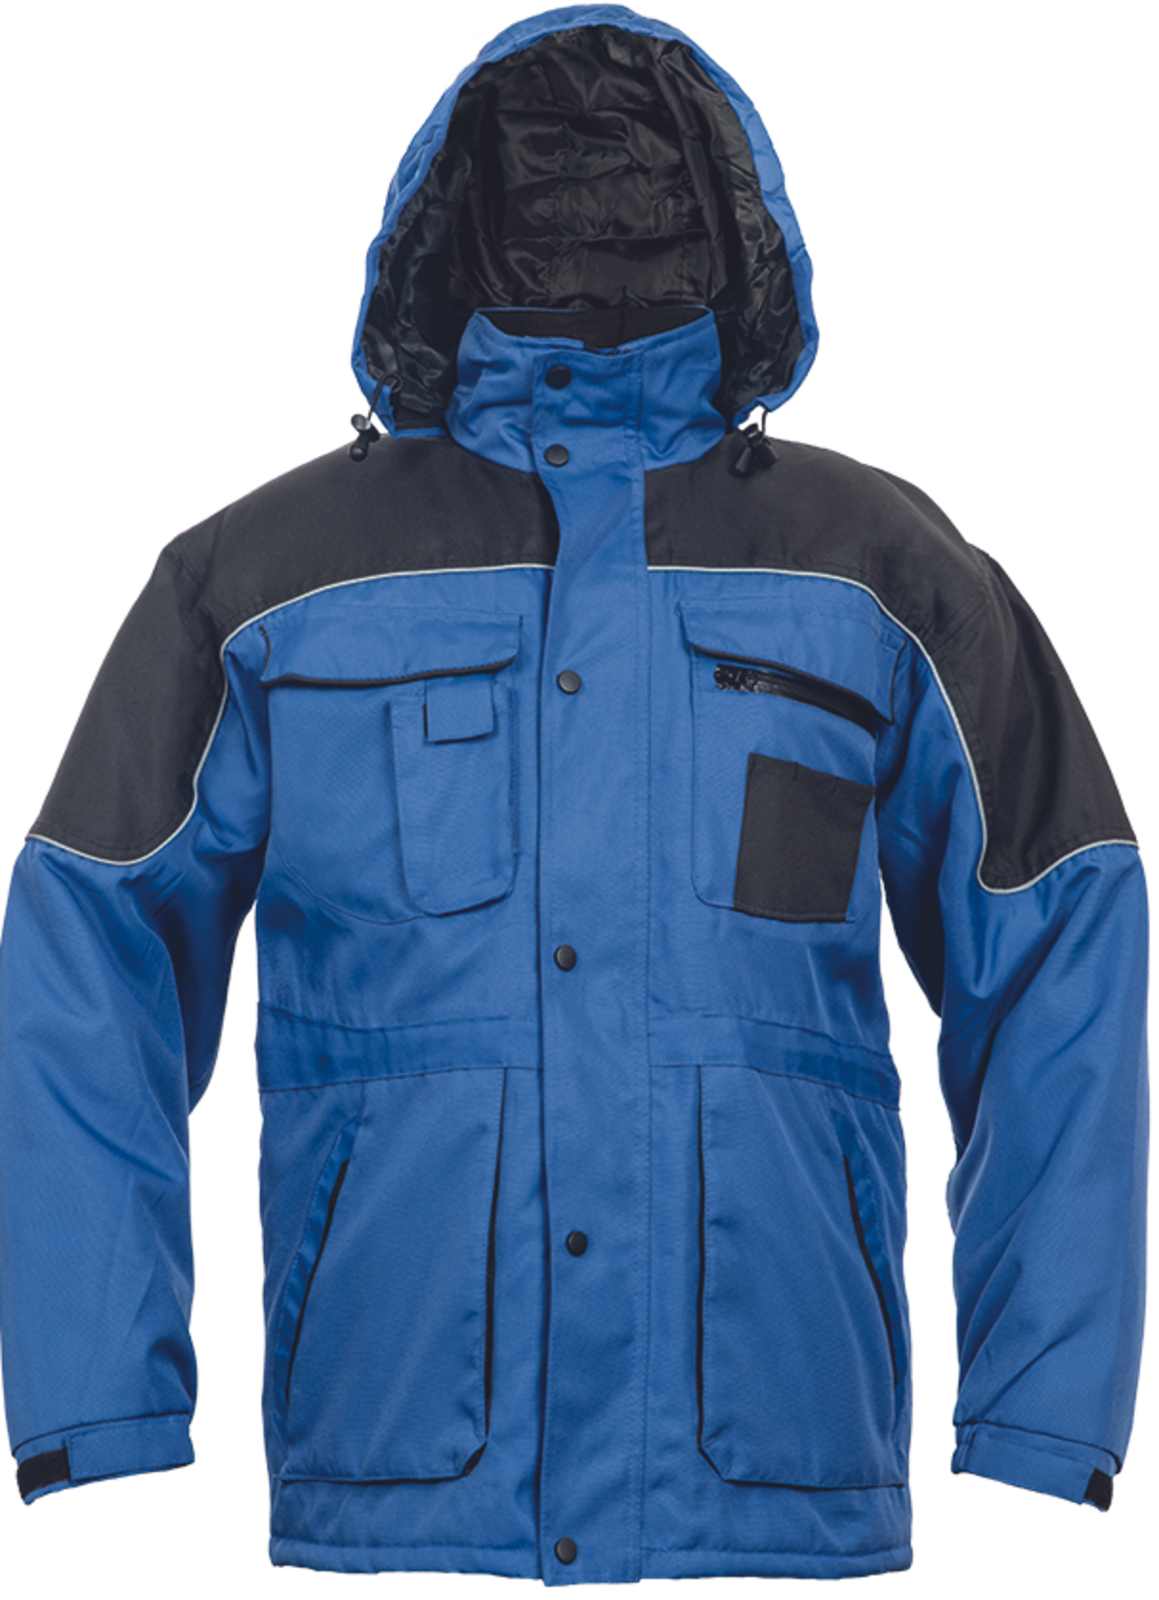 Pracovná bunda Ultimo pánska - veľkosť: XXL, farba: modrá/čierna